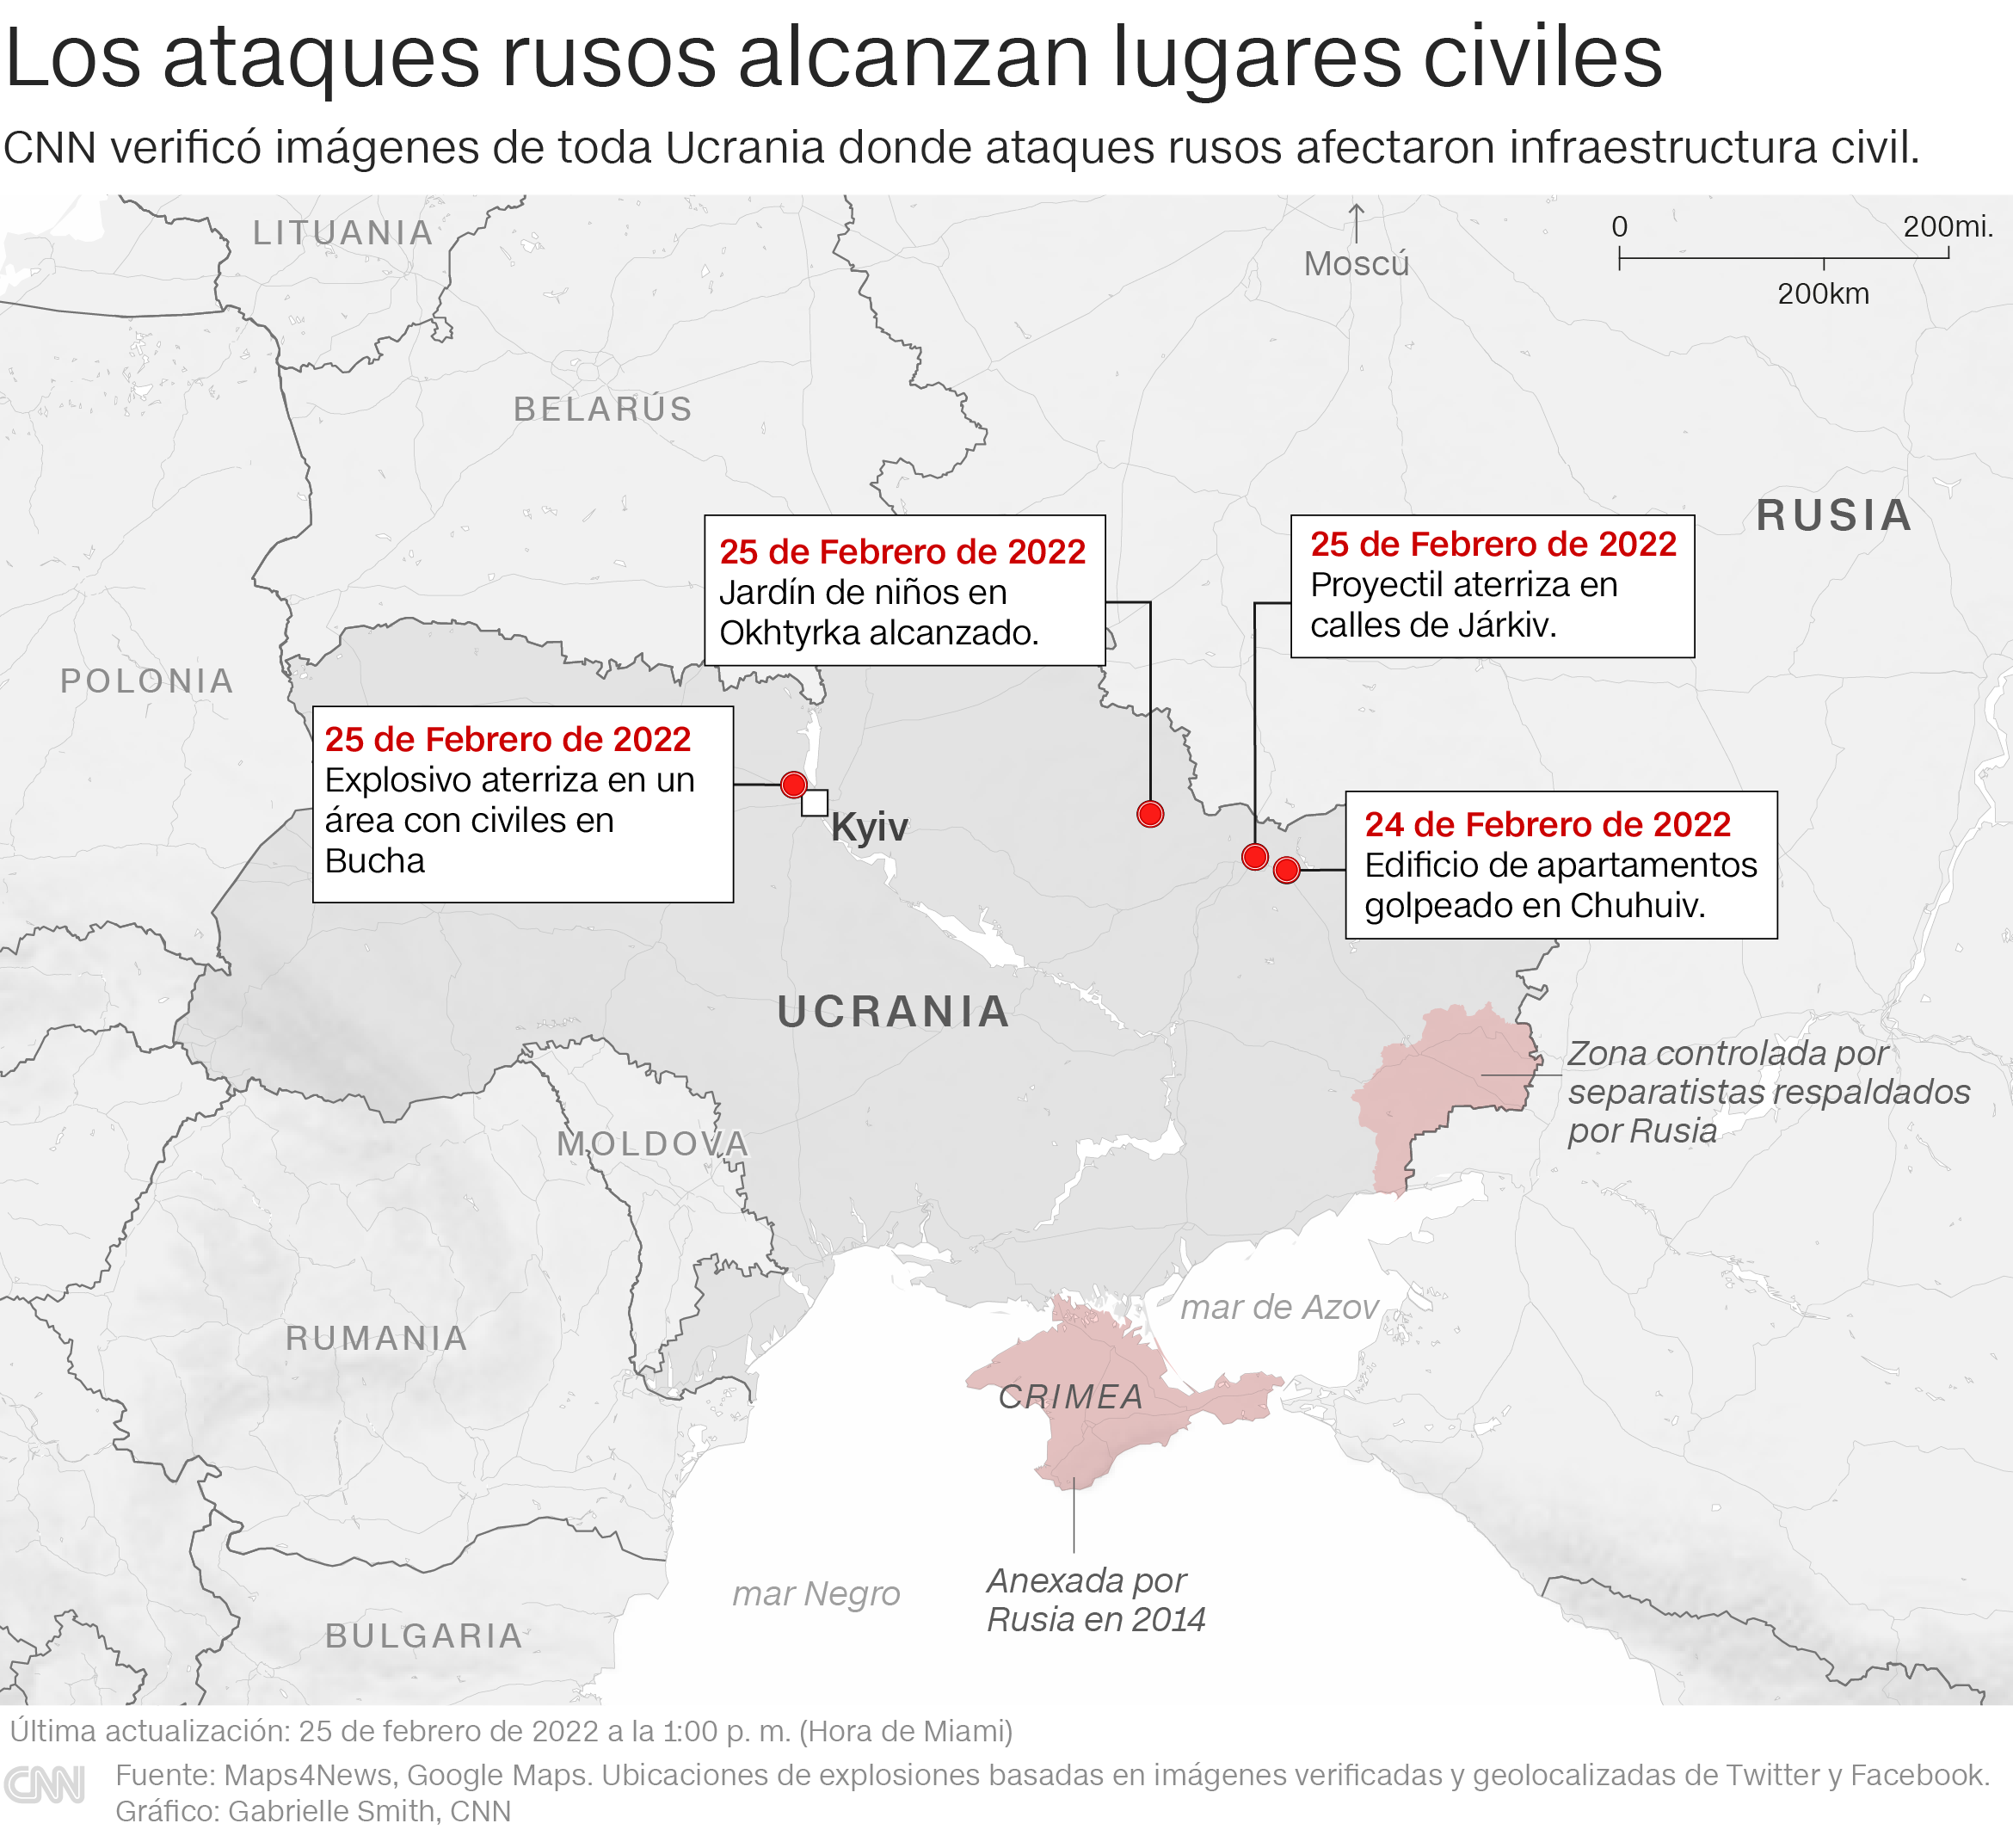 Los sitios civiles en Ucrania alcanzados por ataques rusos